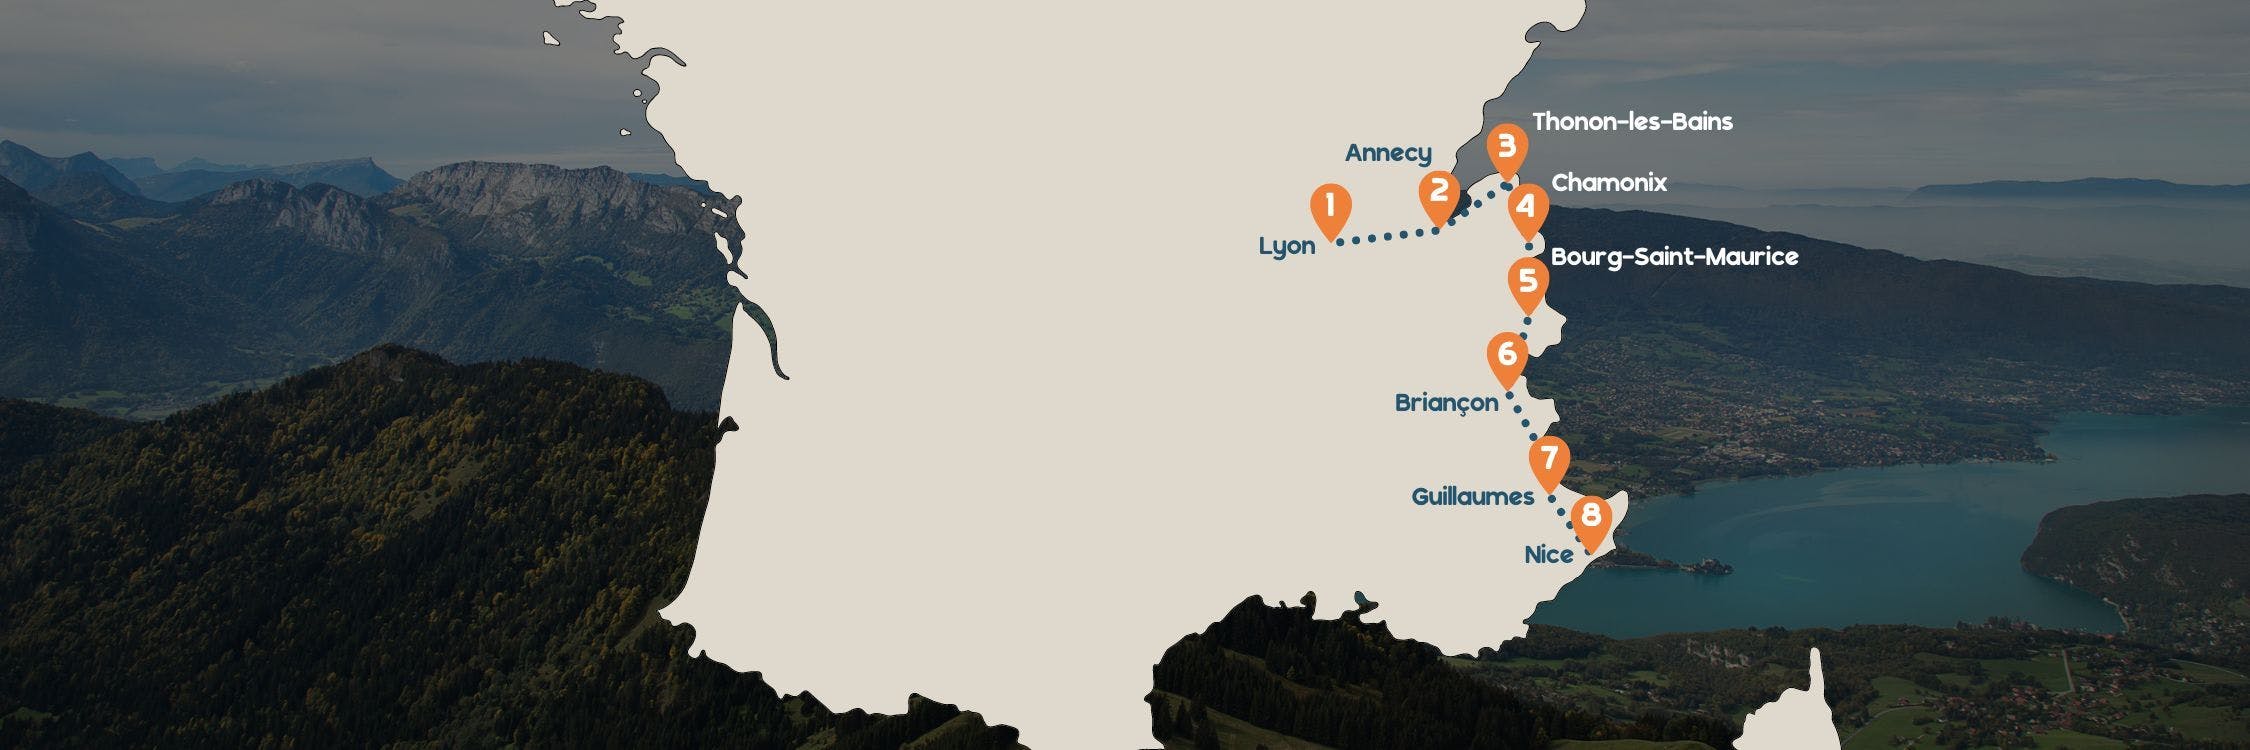 Alpen Fly & Drive routekaart desktop